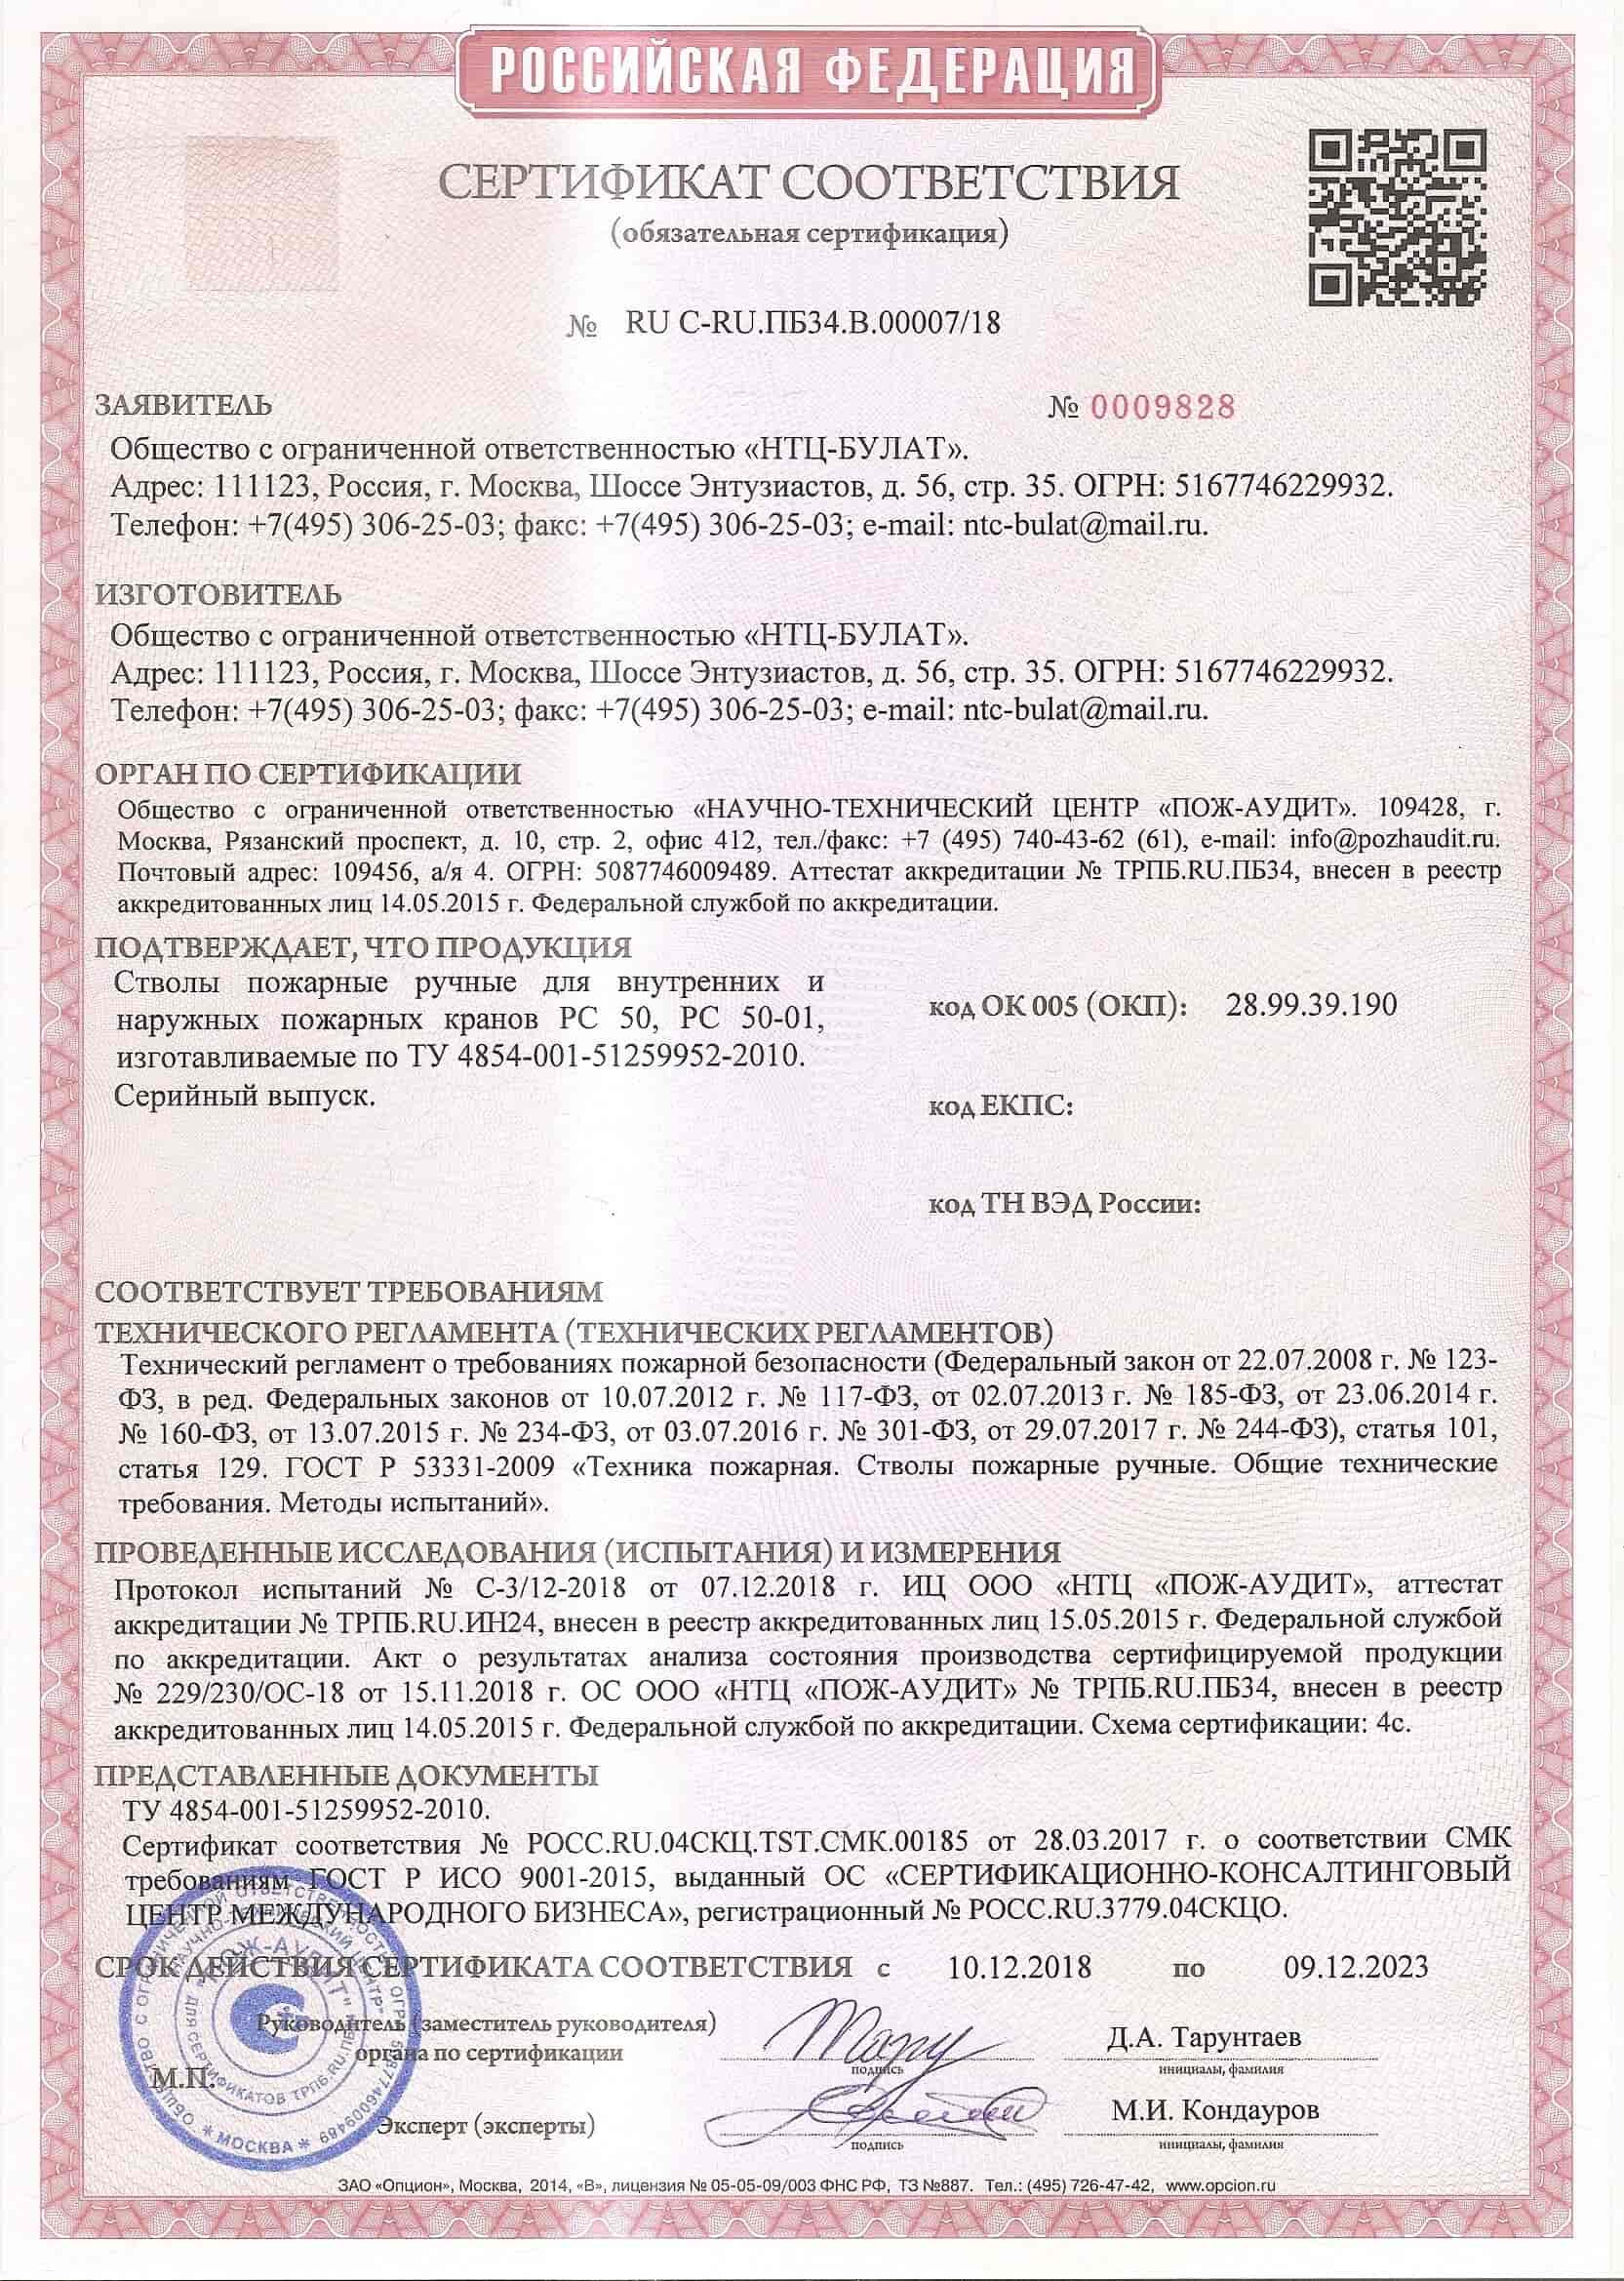 Сертификат пожарного ручного ствола РС-50-01